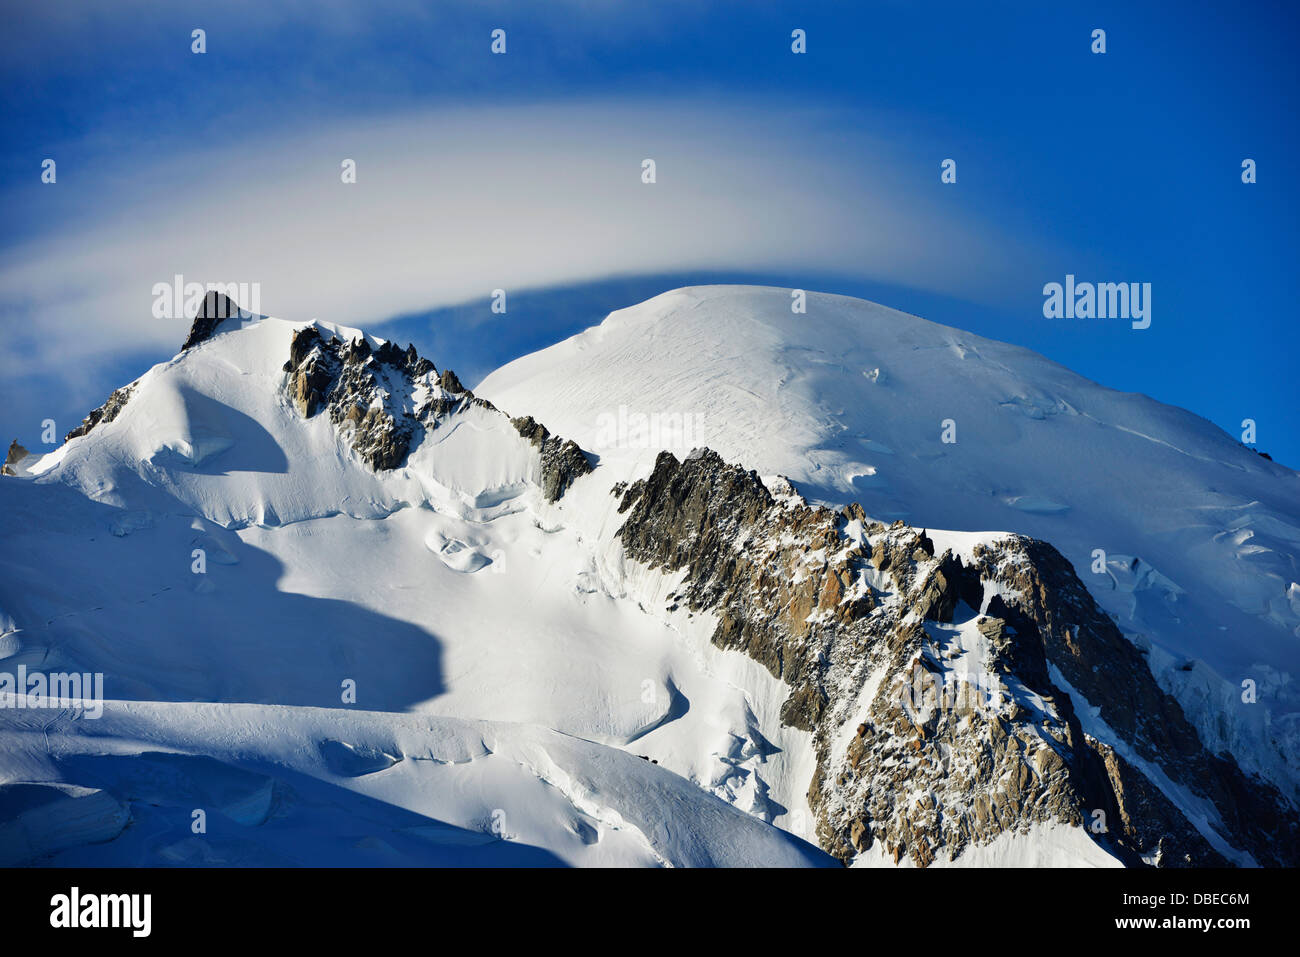 Europa, Frankreich, Französische Alpen, Haute-Savoie, Chamonix, linsenförmige Wolke und Bergsteiger auf den Gipfel des Mont Blanc 4810m Stockfoto